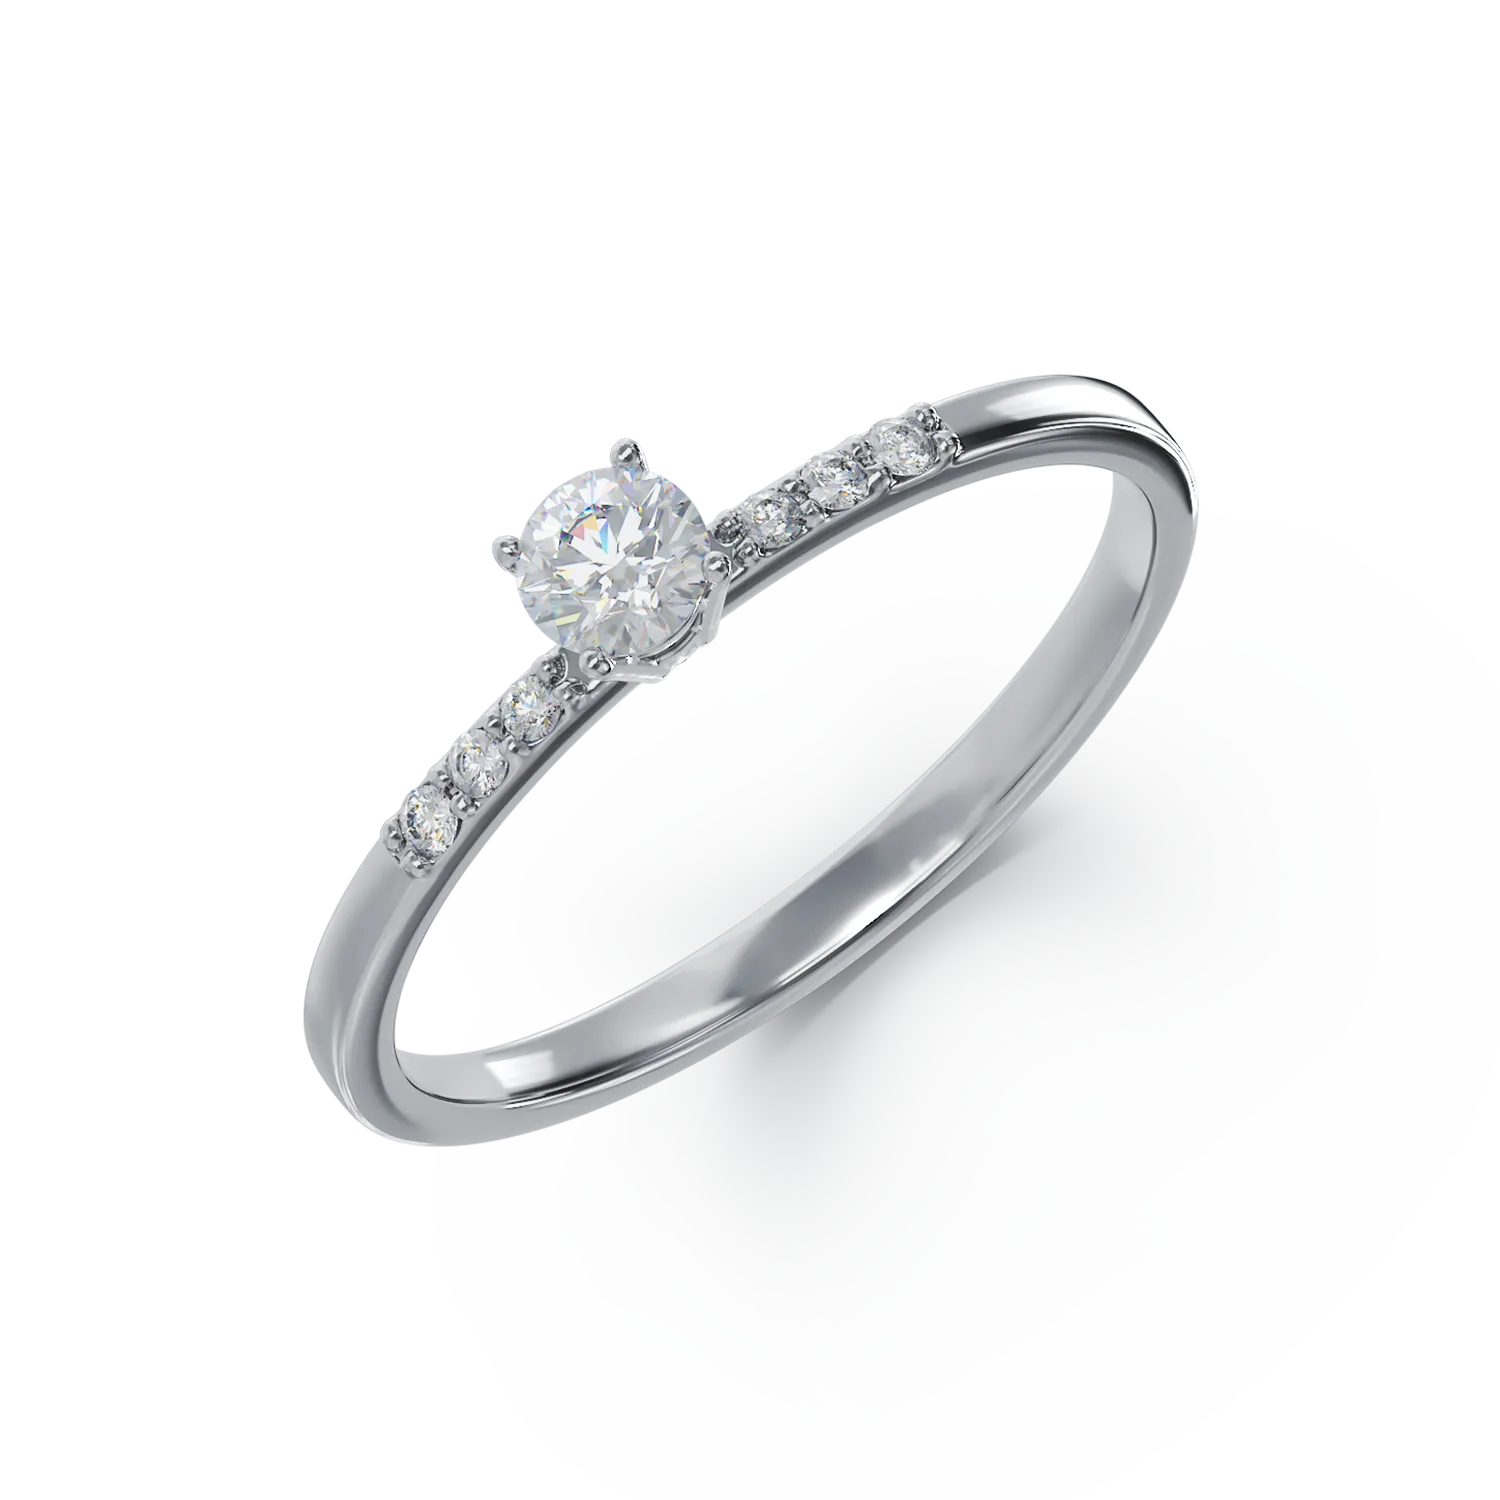 14K white gold engagement ring